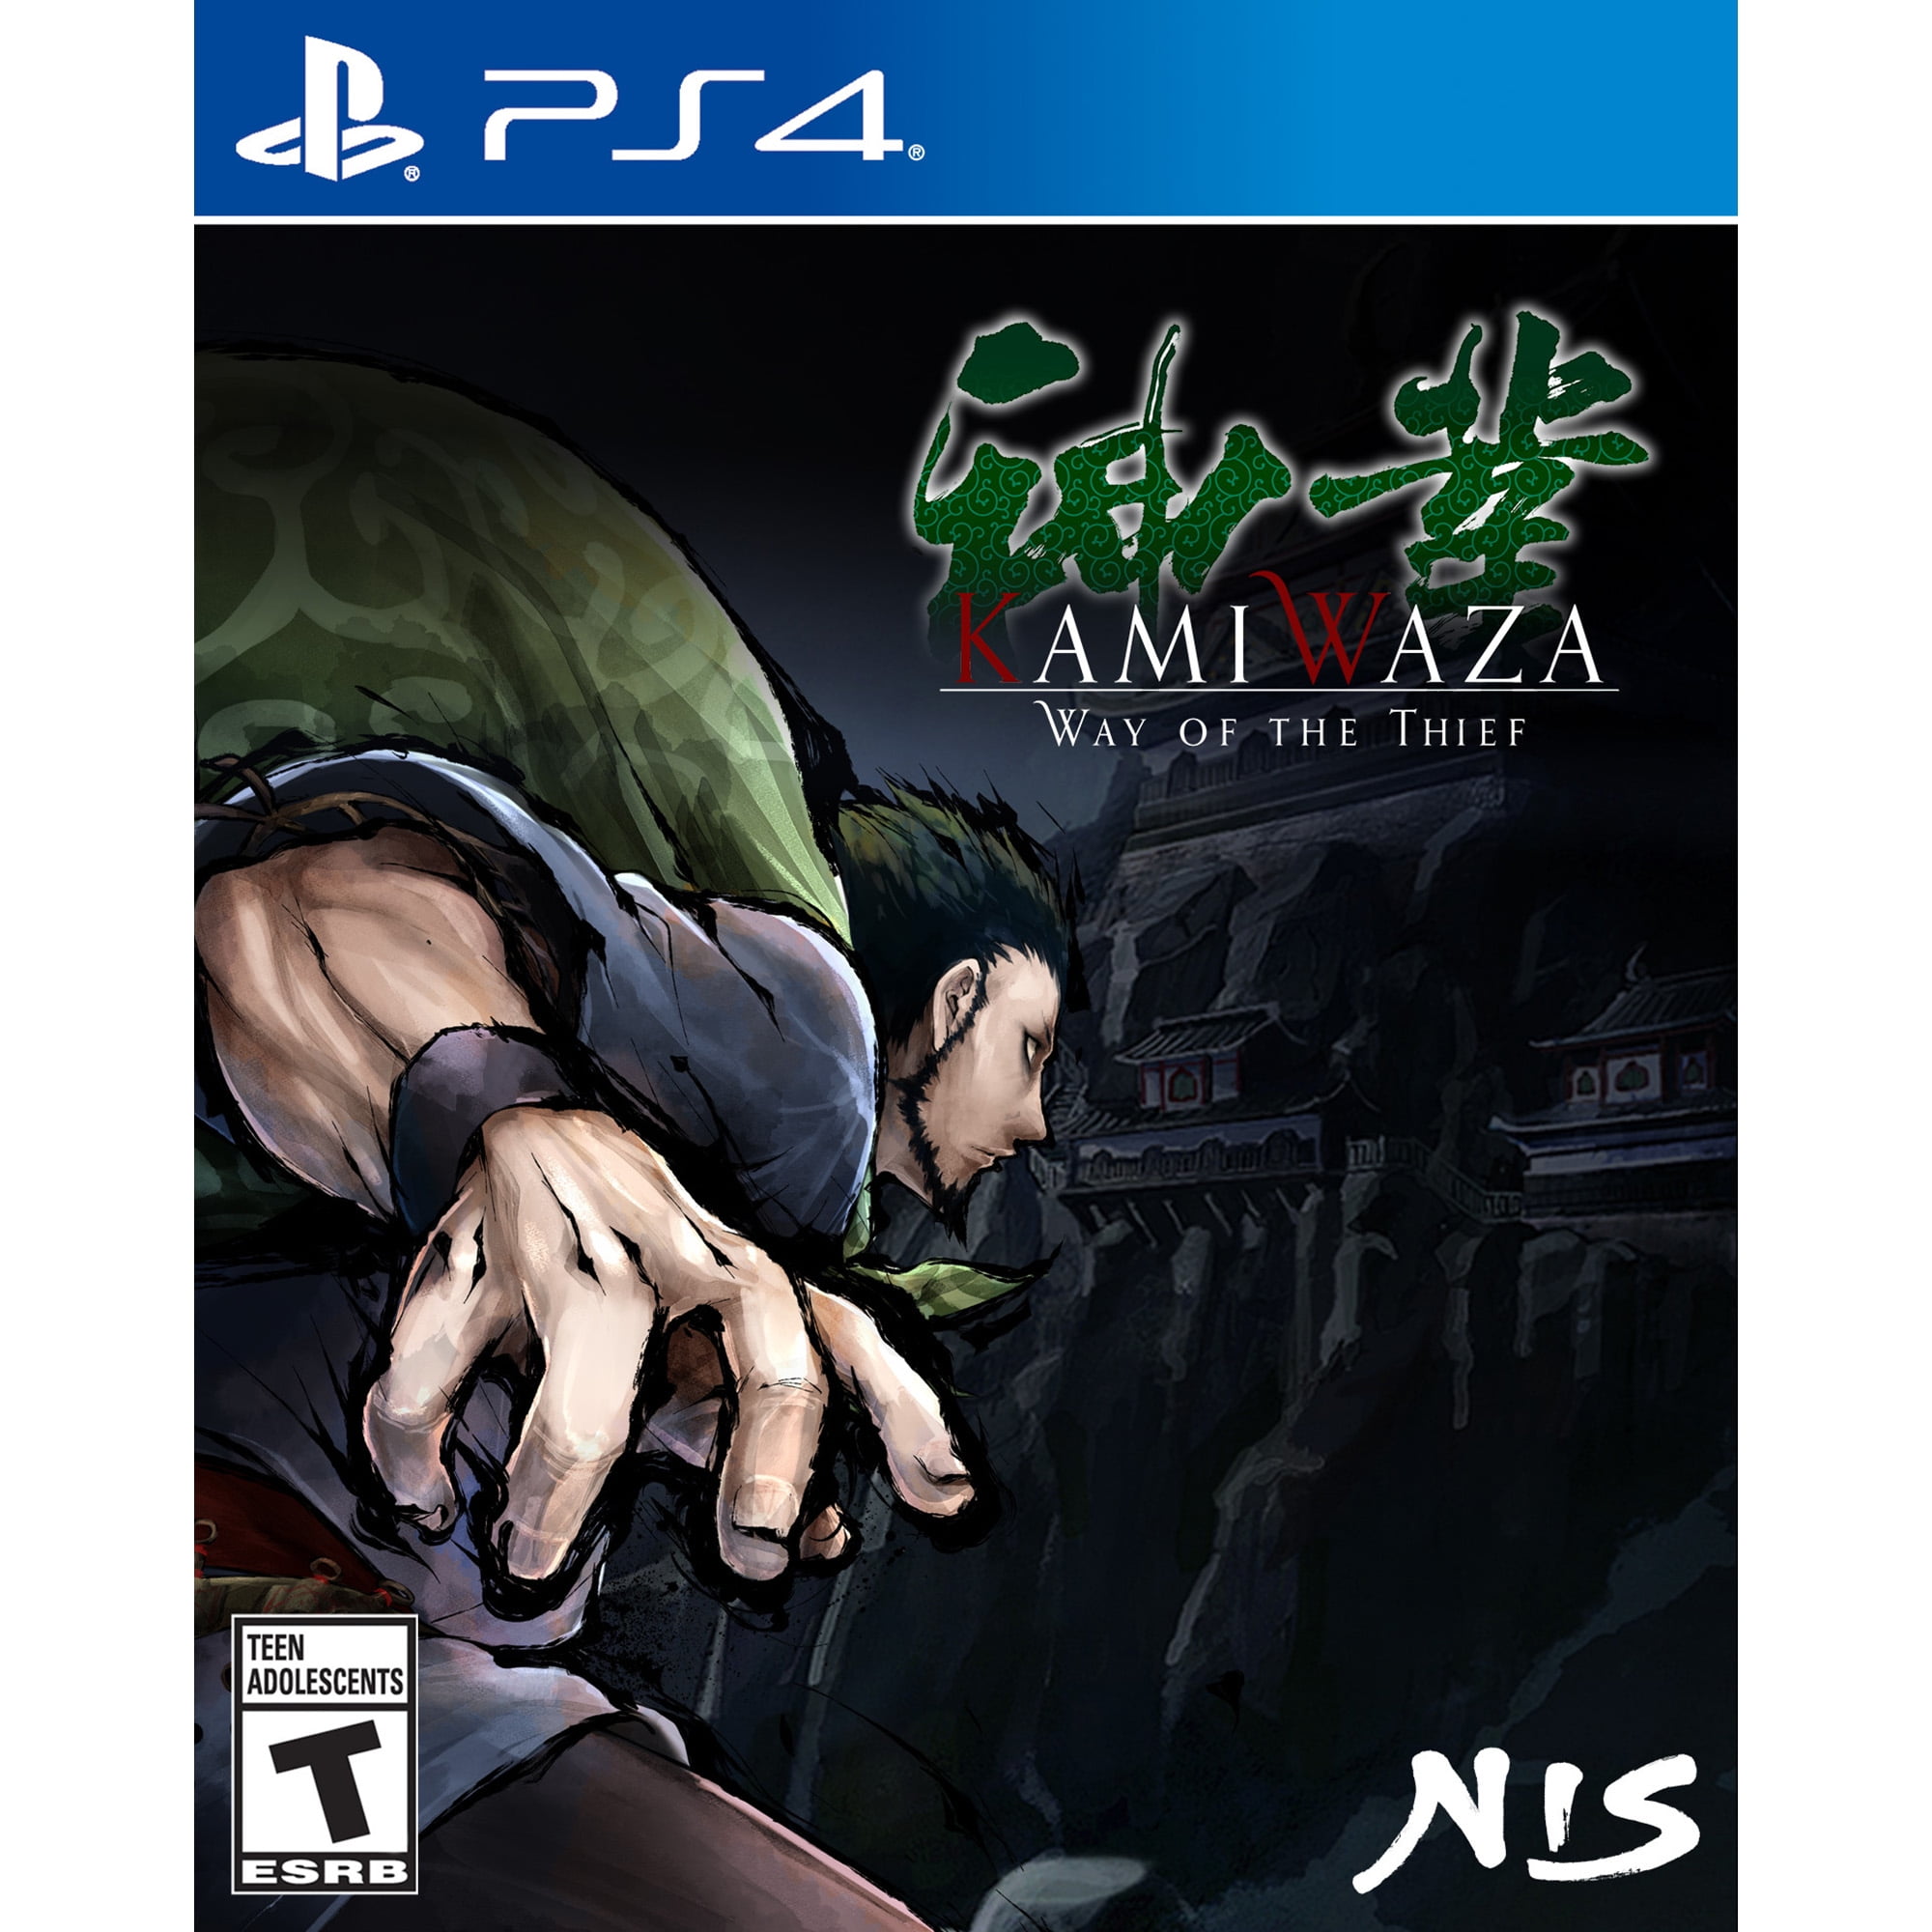 Kamiwaza Way of the Thief - PlayStation 4 image image